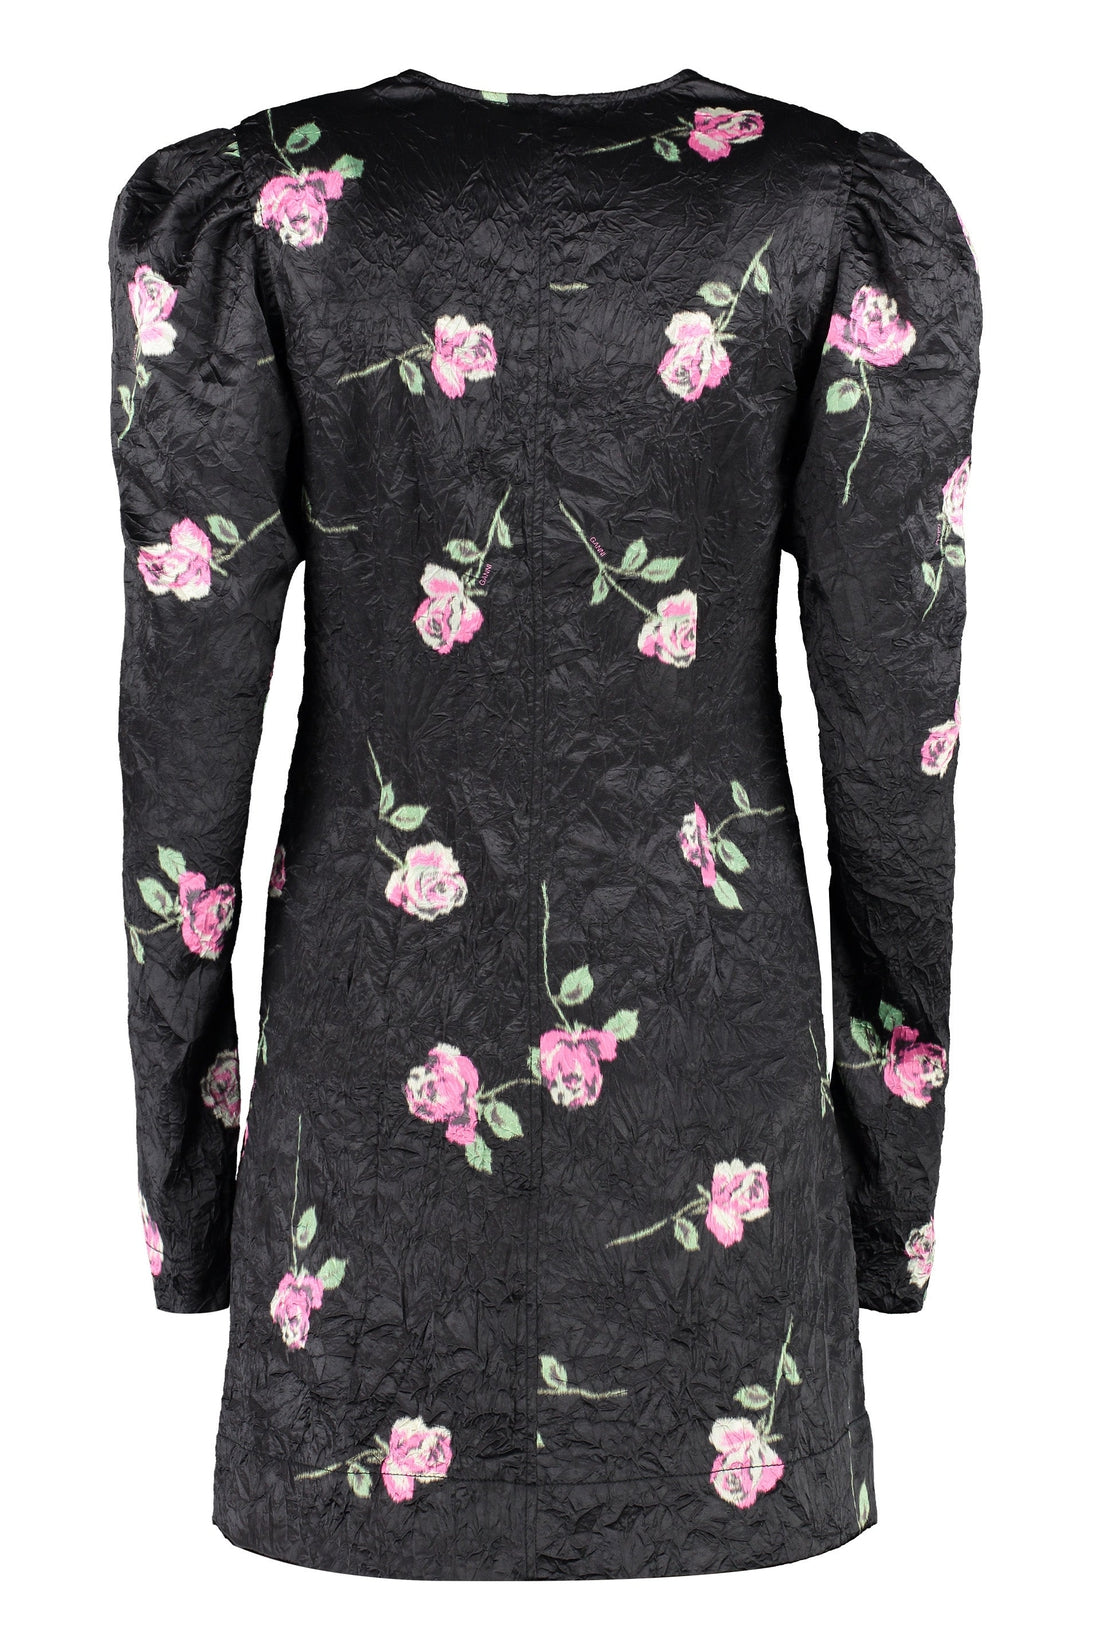 GANNI-OUTLET-SALE-Dress with floral print-ARCHIVIST